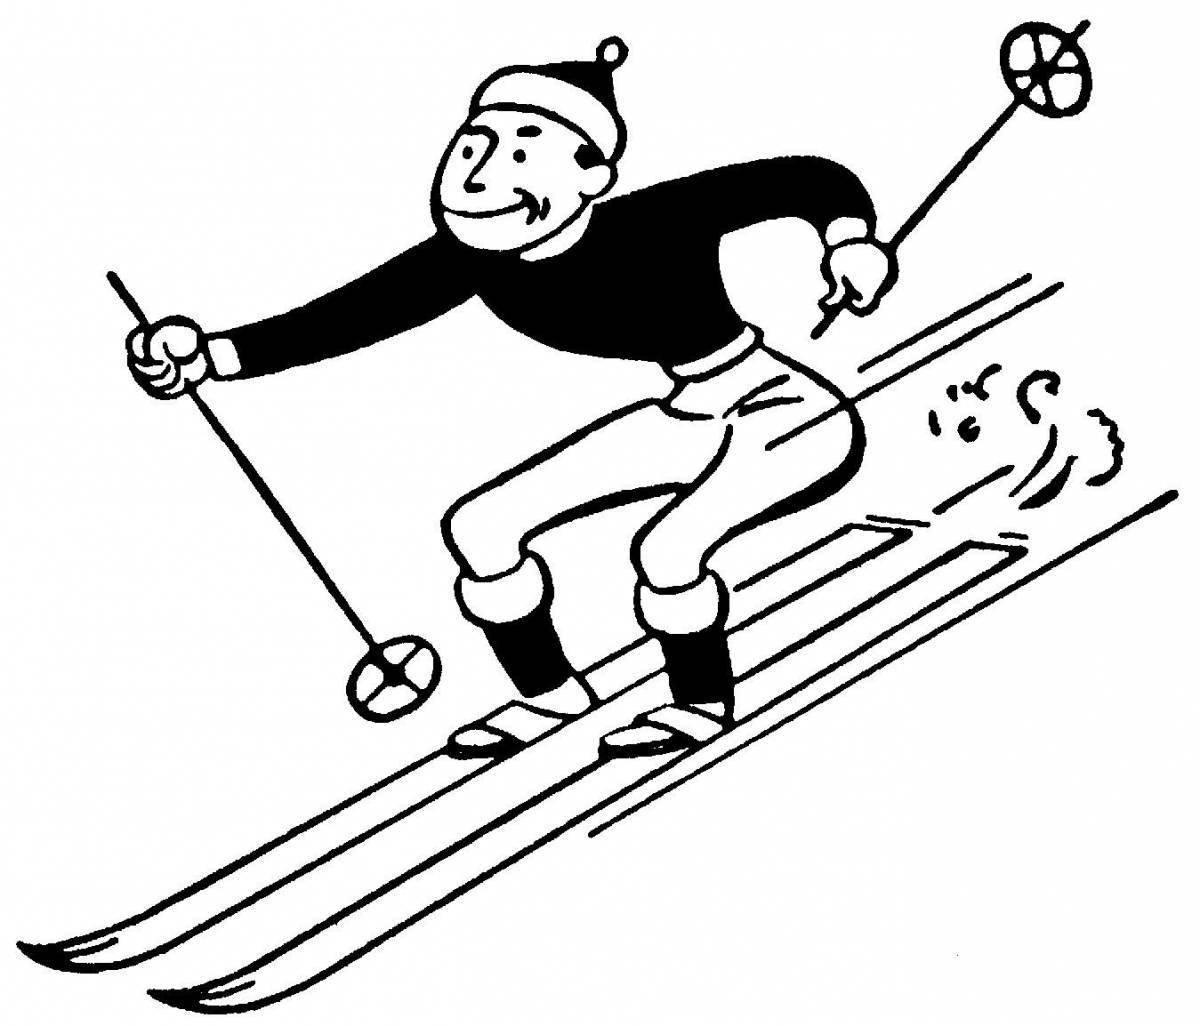 Бесстрашный лыжник в движении